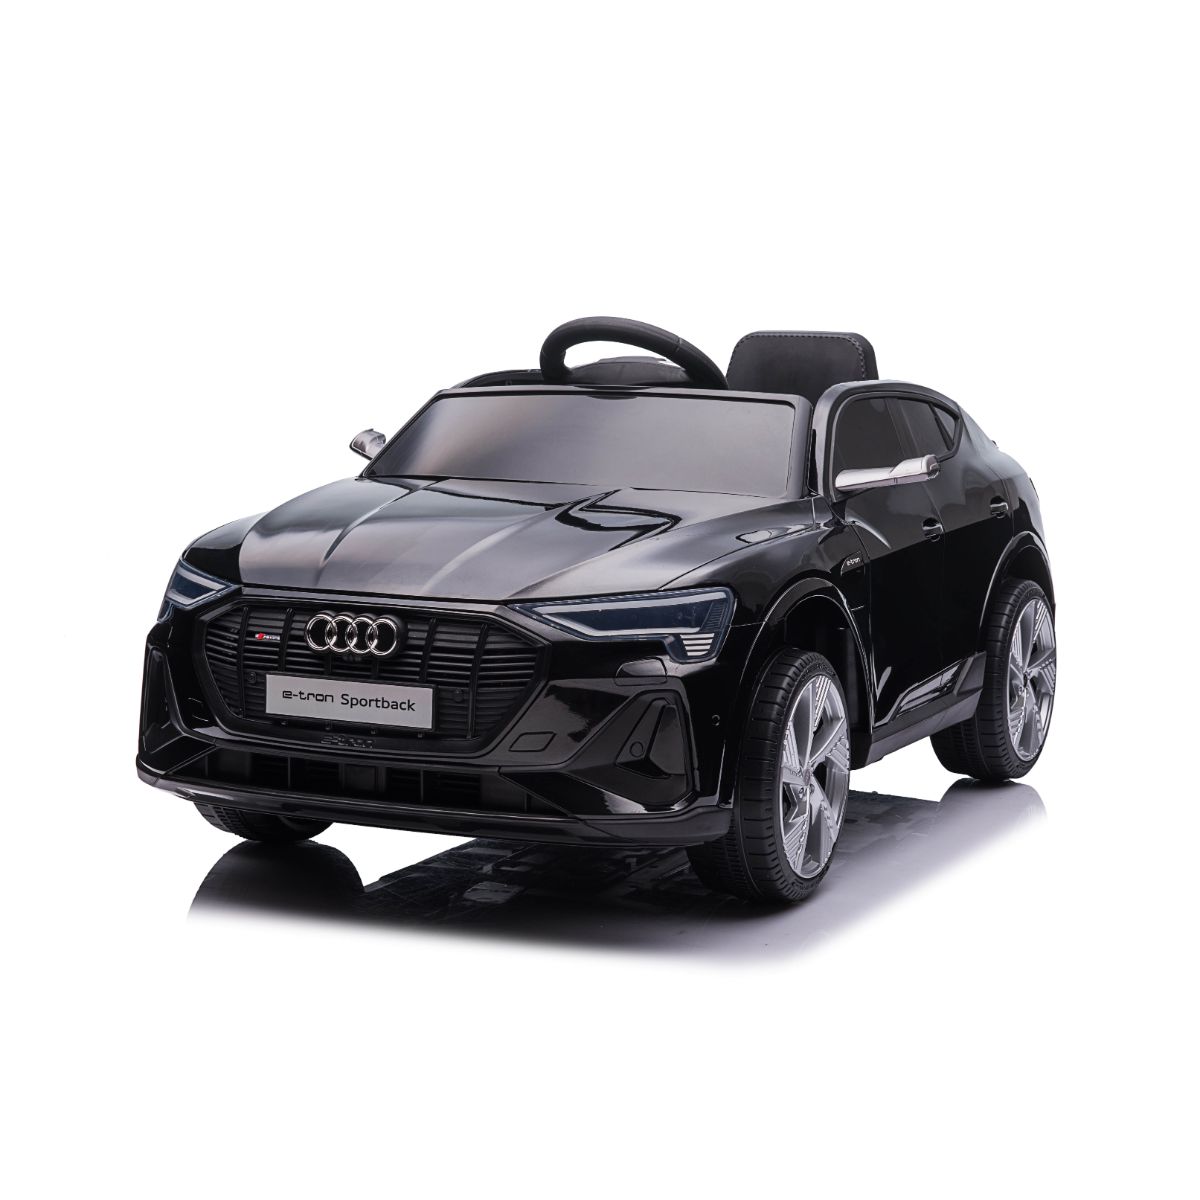 Masinuta electrica, Audi E-Tron Sport Back, negru Audi